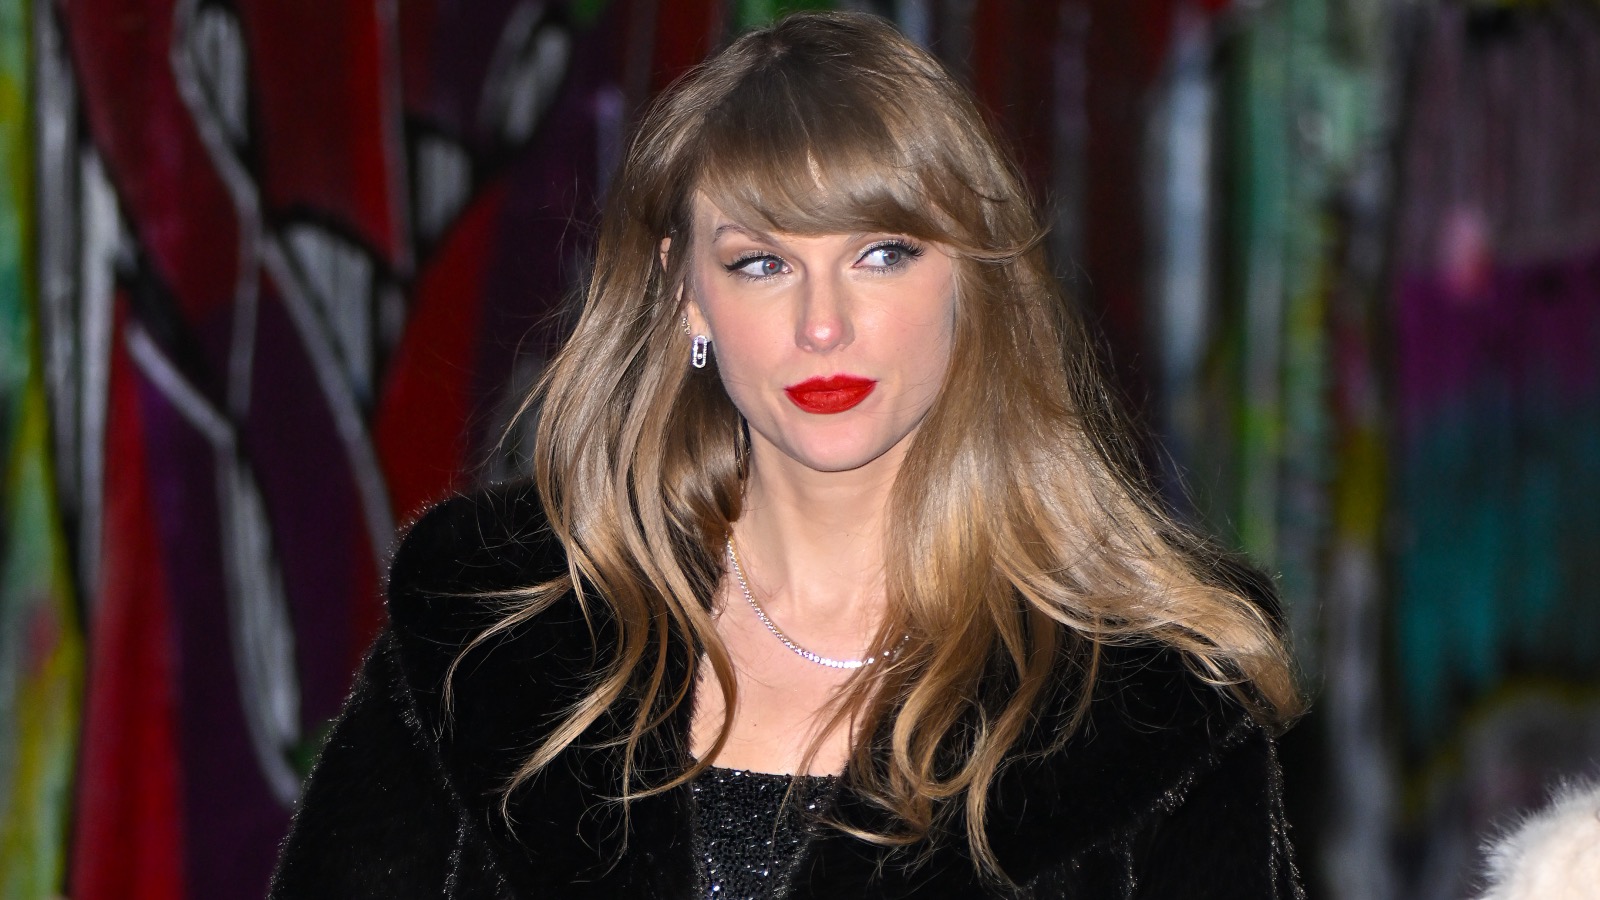 Taylor Swift wearing a black coat